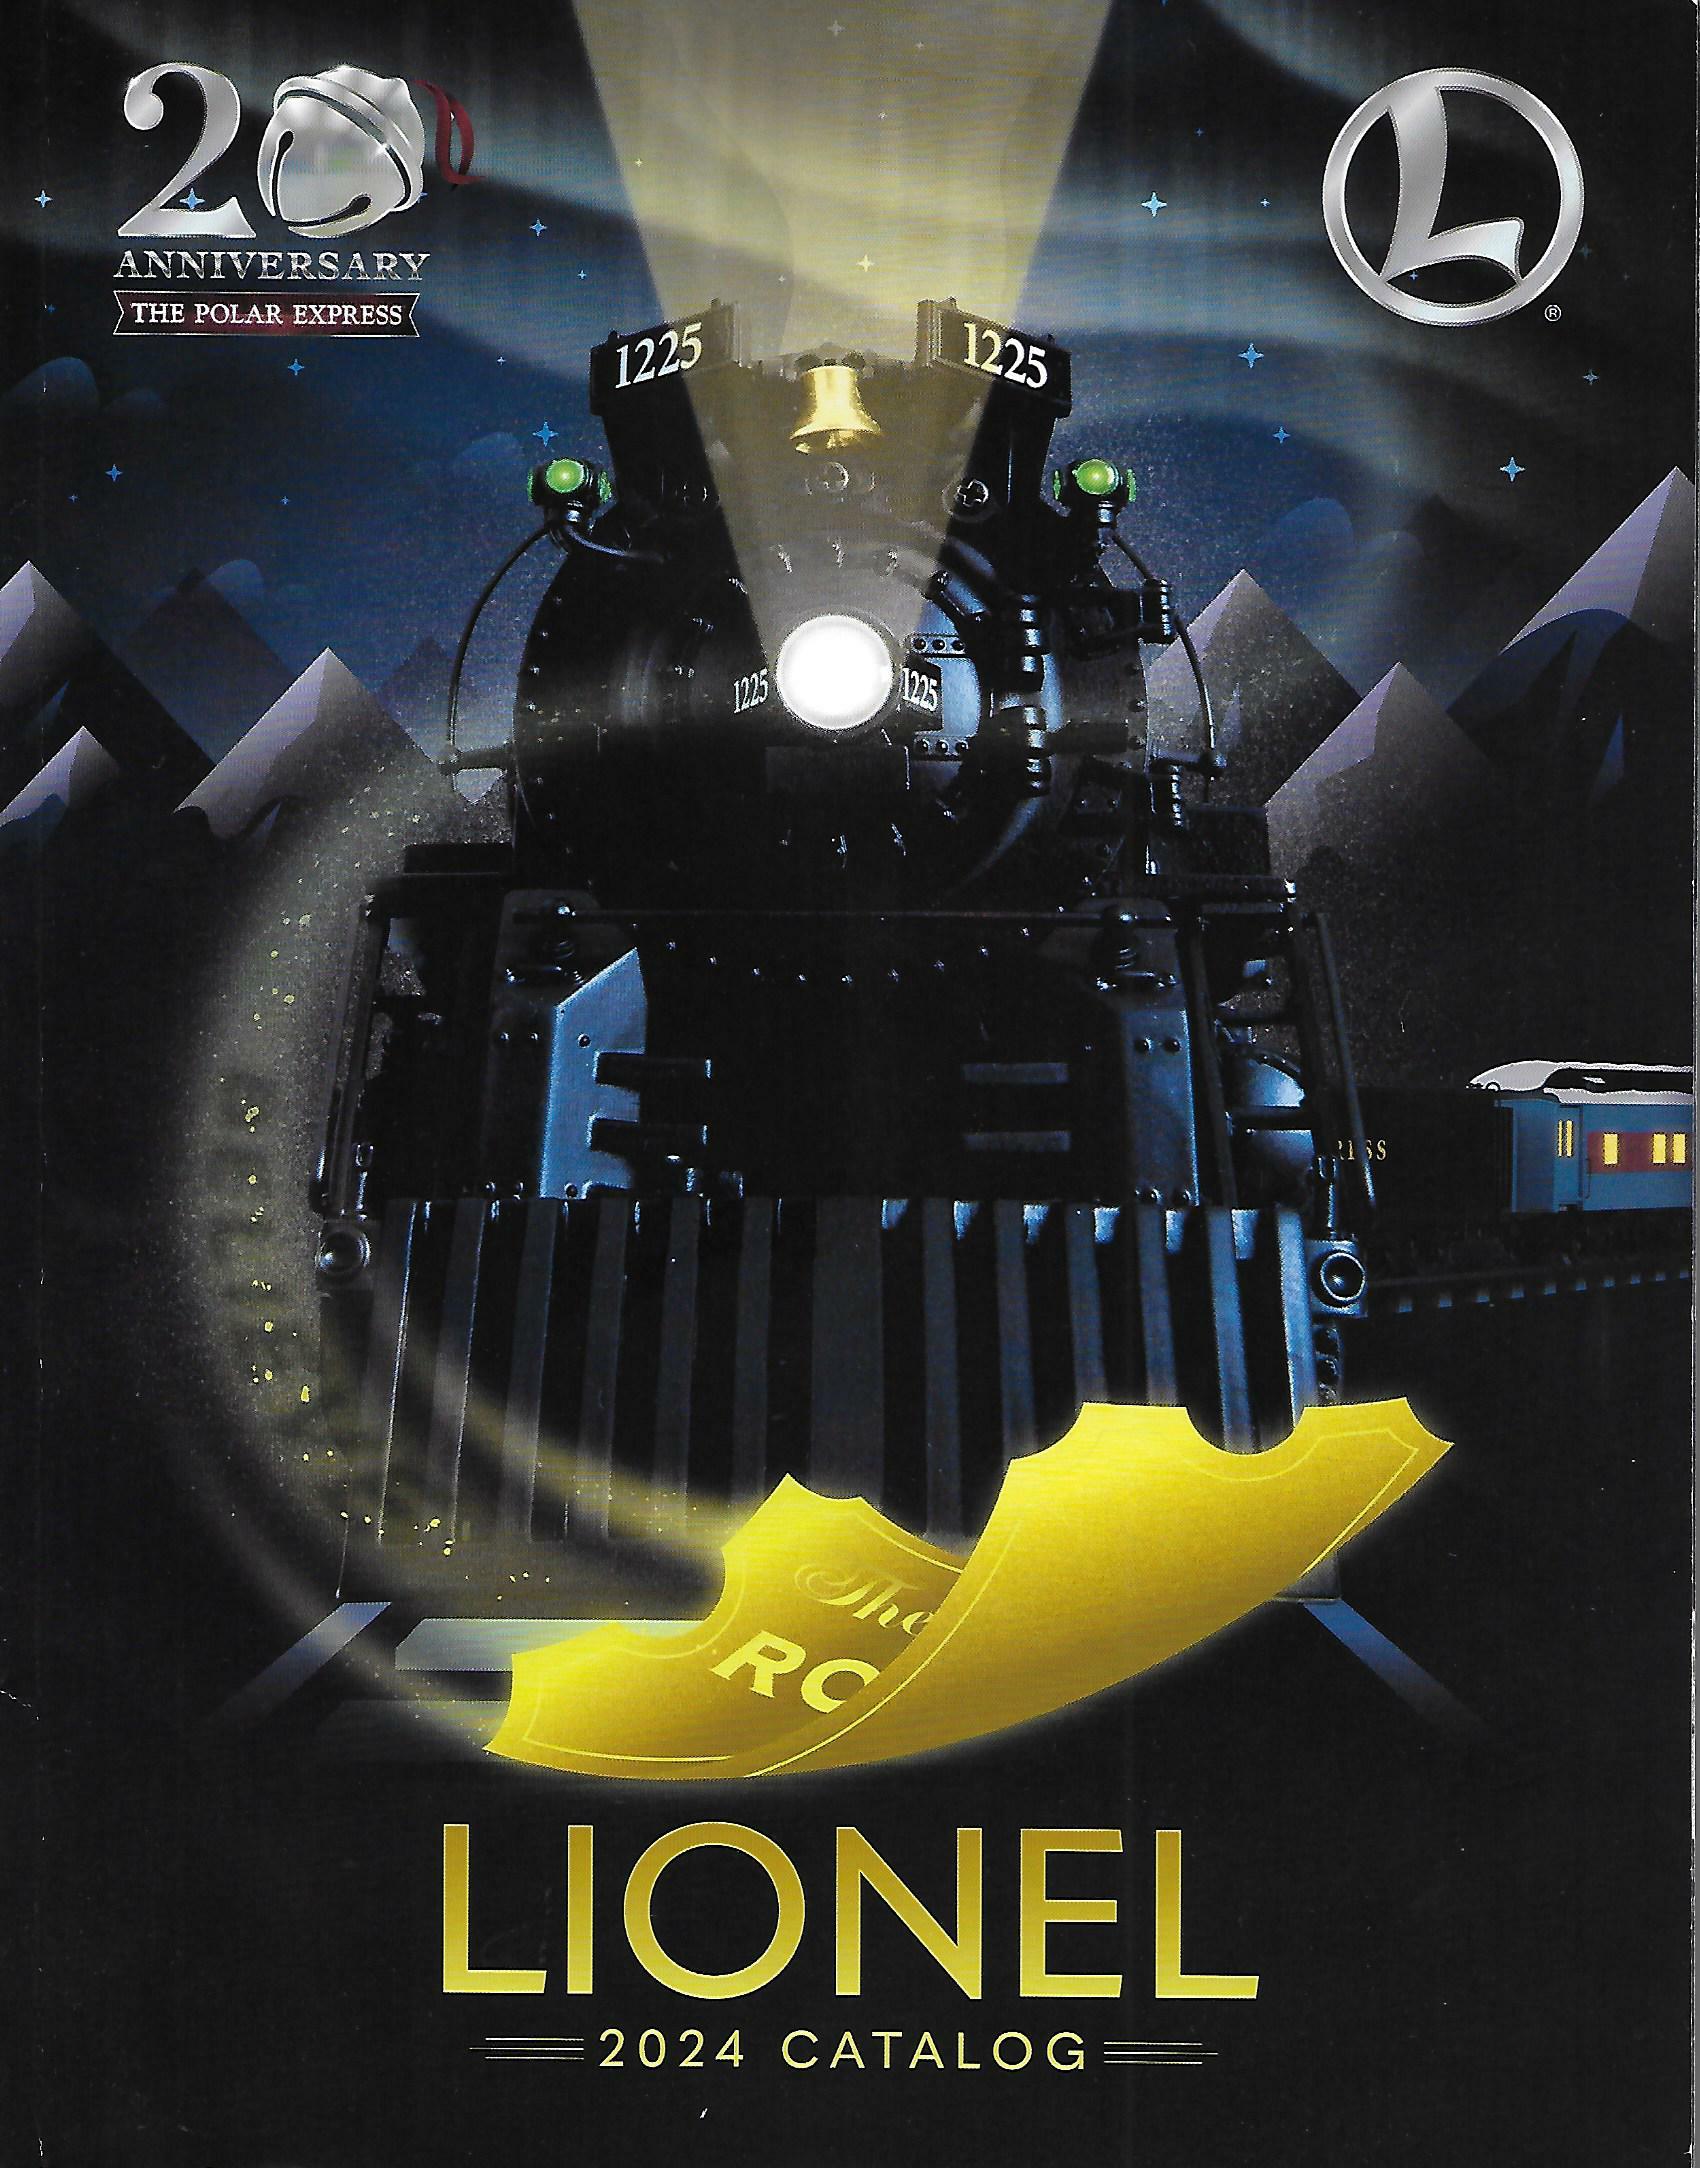 Lionel 2024 Catalog image